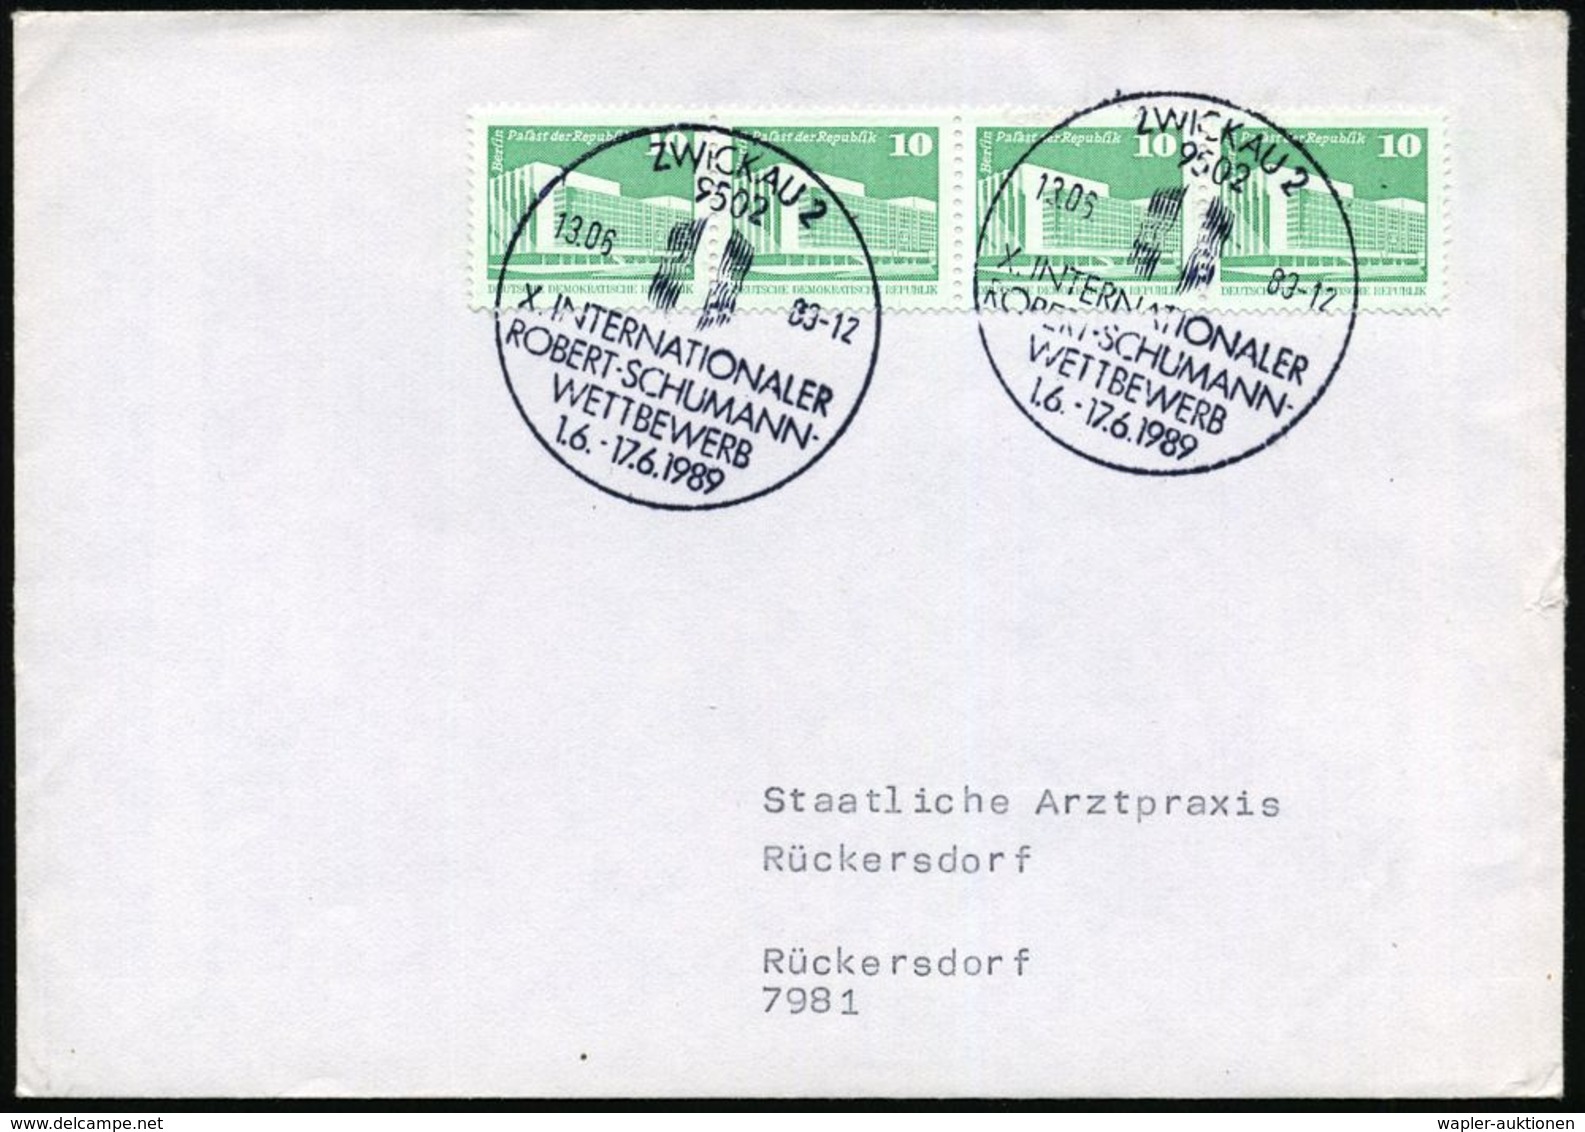 ROBERT SCHUMANN : 9502 ZWICKAU 2/ X.INTERNAT./ ROBERT-SCHUMANN-/ WETTBEWERB 1989 (13.6.) SSt (Logo) 2x Klar Auf Inl.-Bf. - Musik